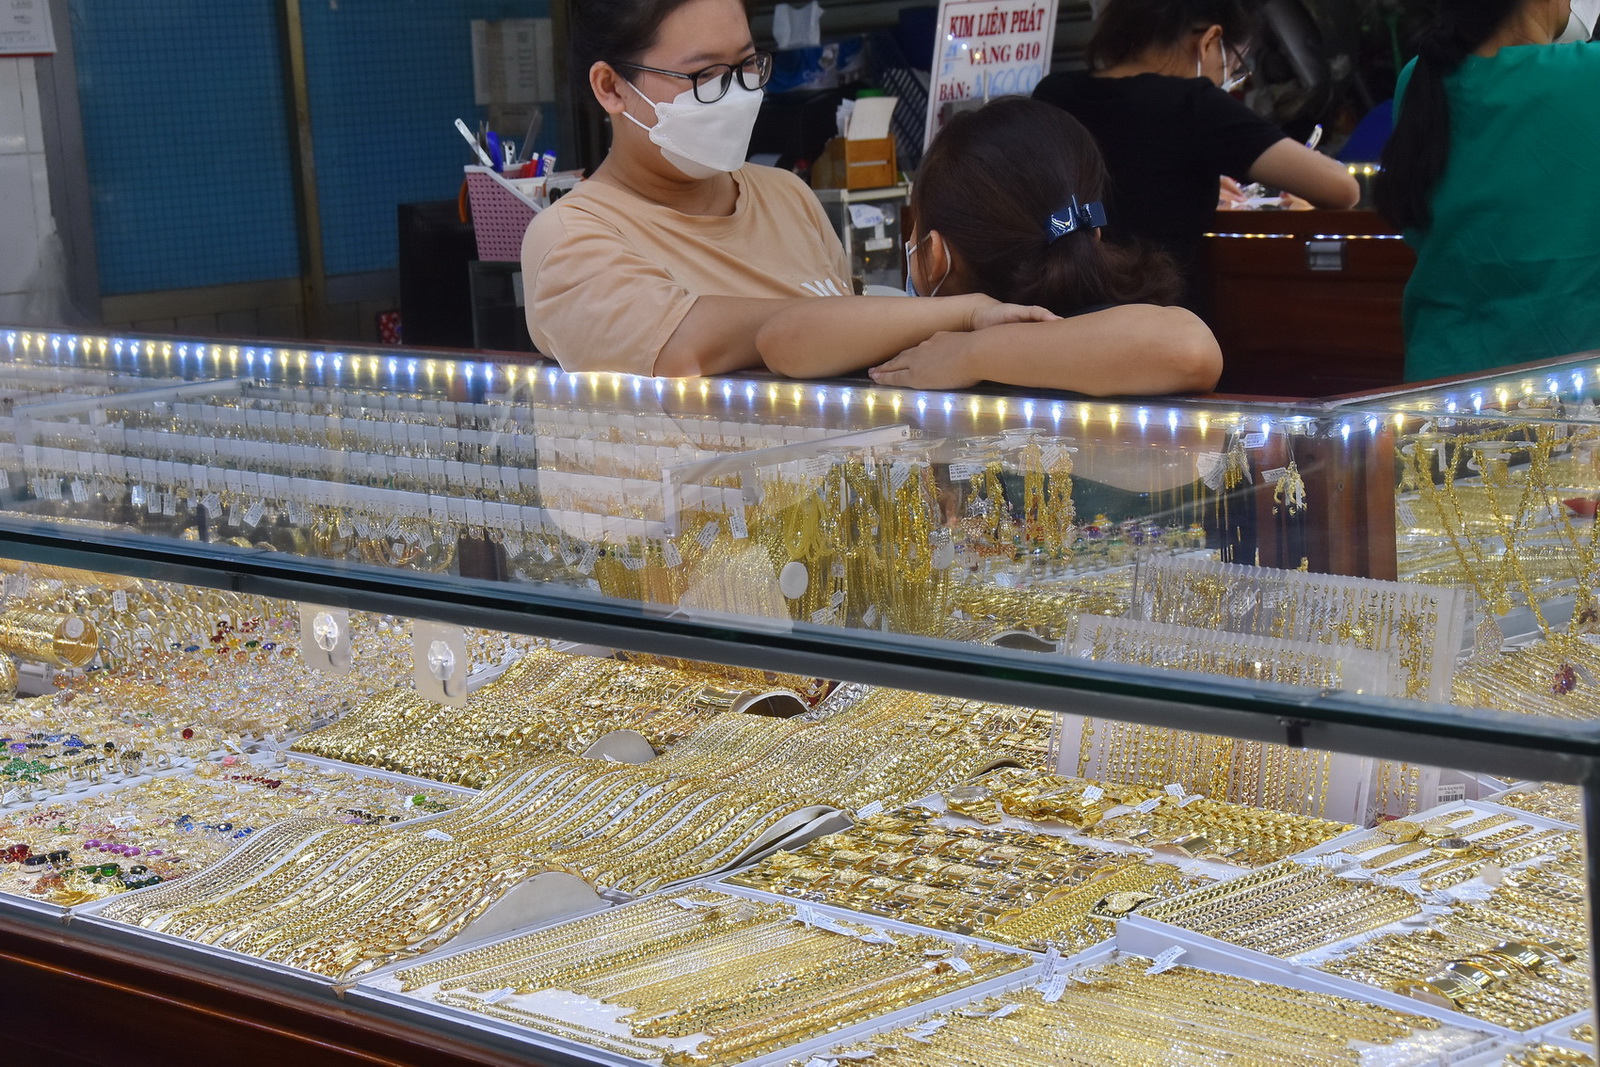 Giá vàng hôm nay 24-1: Vàng SJC tăng mạnh, tiến sát 62 triệu đồng/lượng - Ảnh 1.